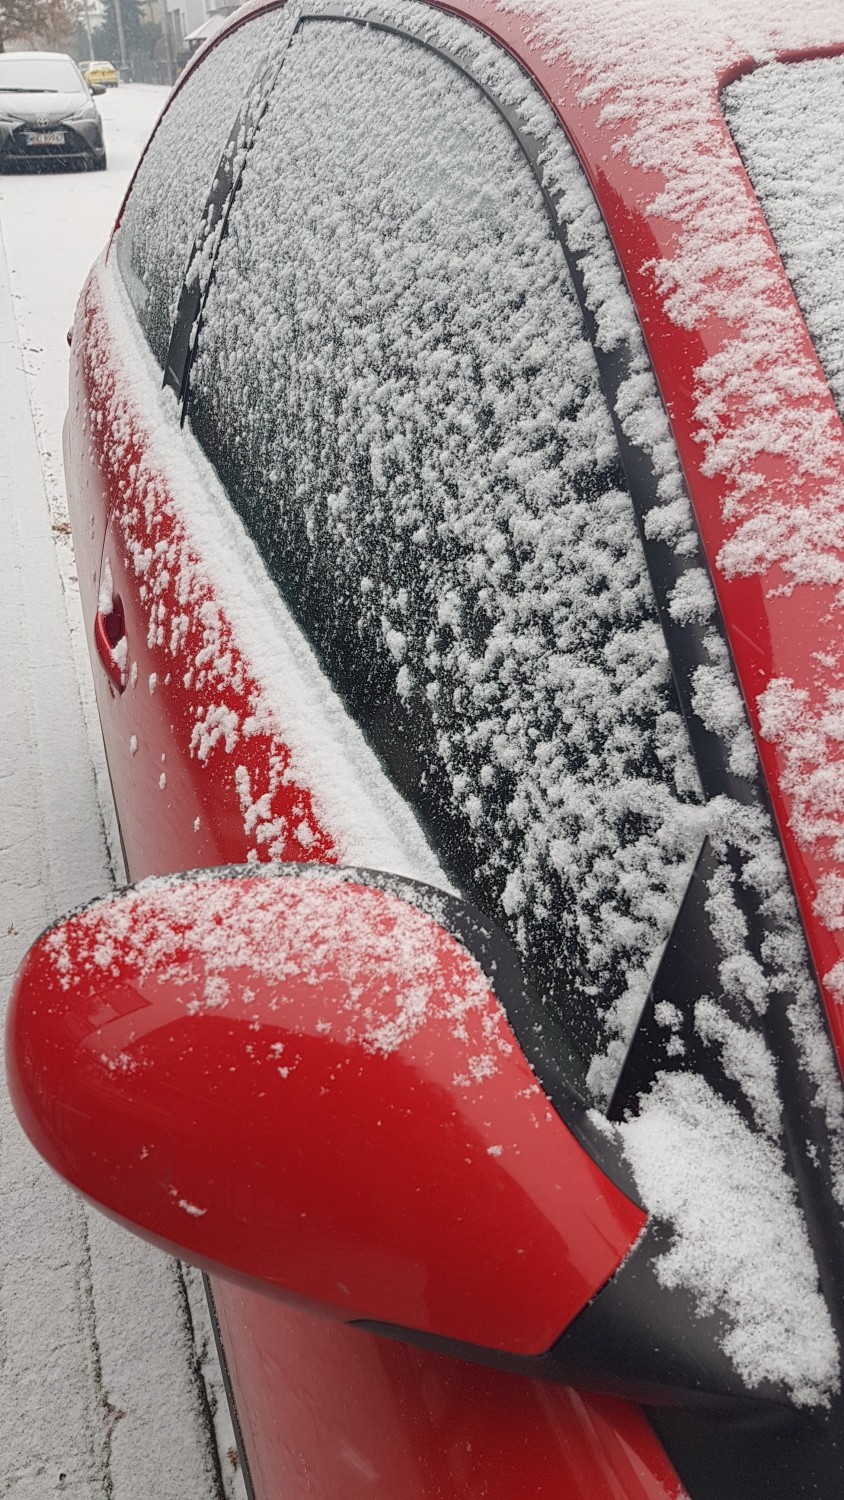 Zima w Lesznie 3 grudnia 2020 i pierwszy śnieg w tym sezonie